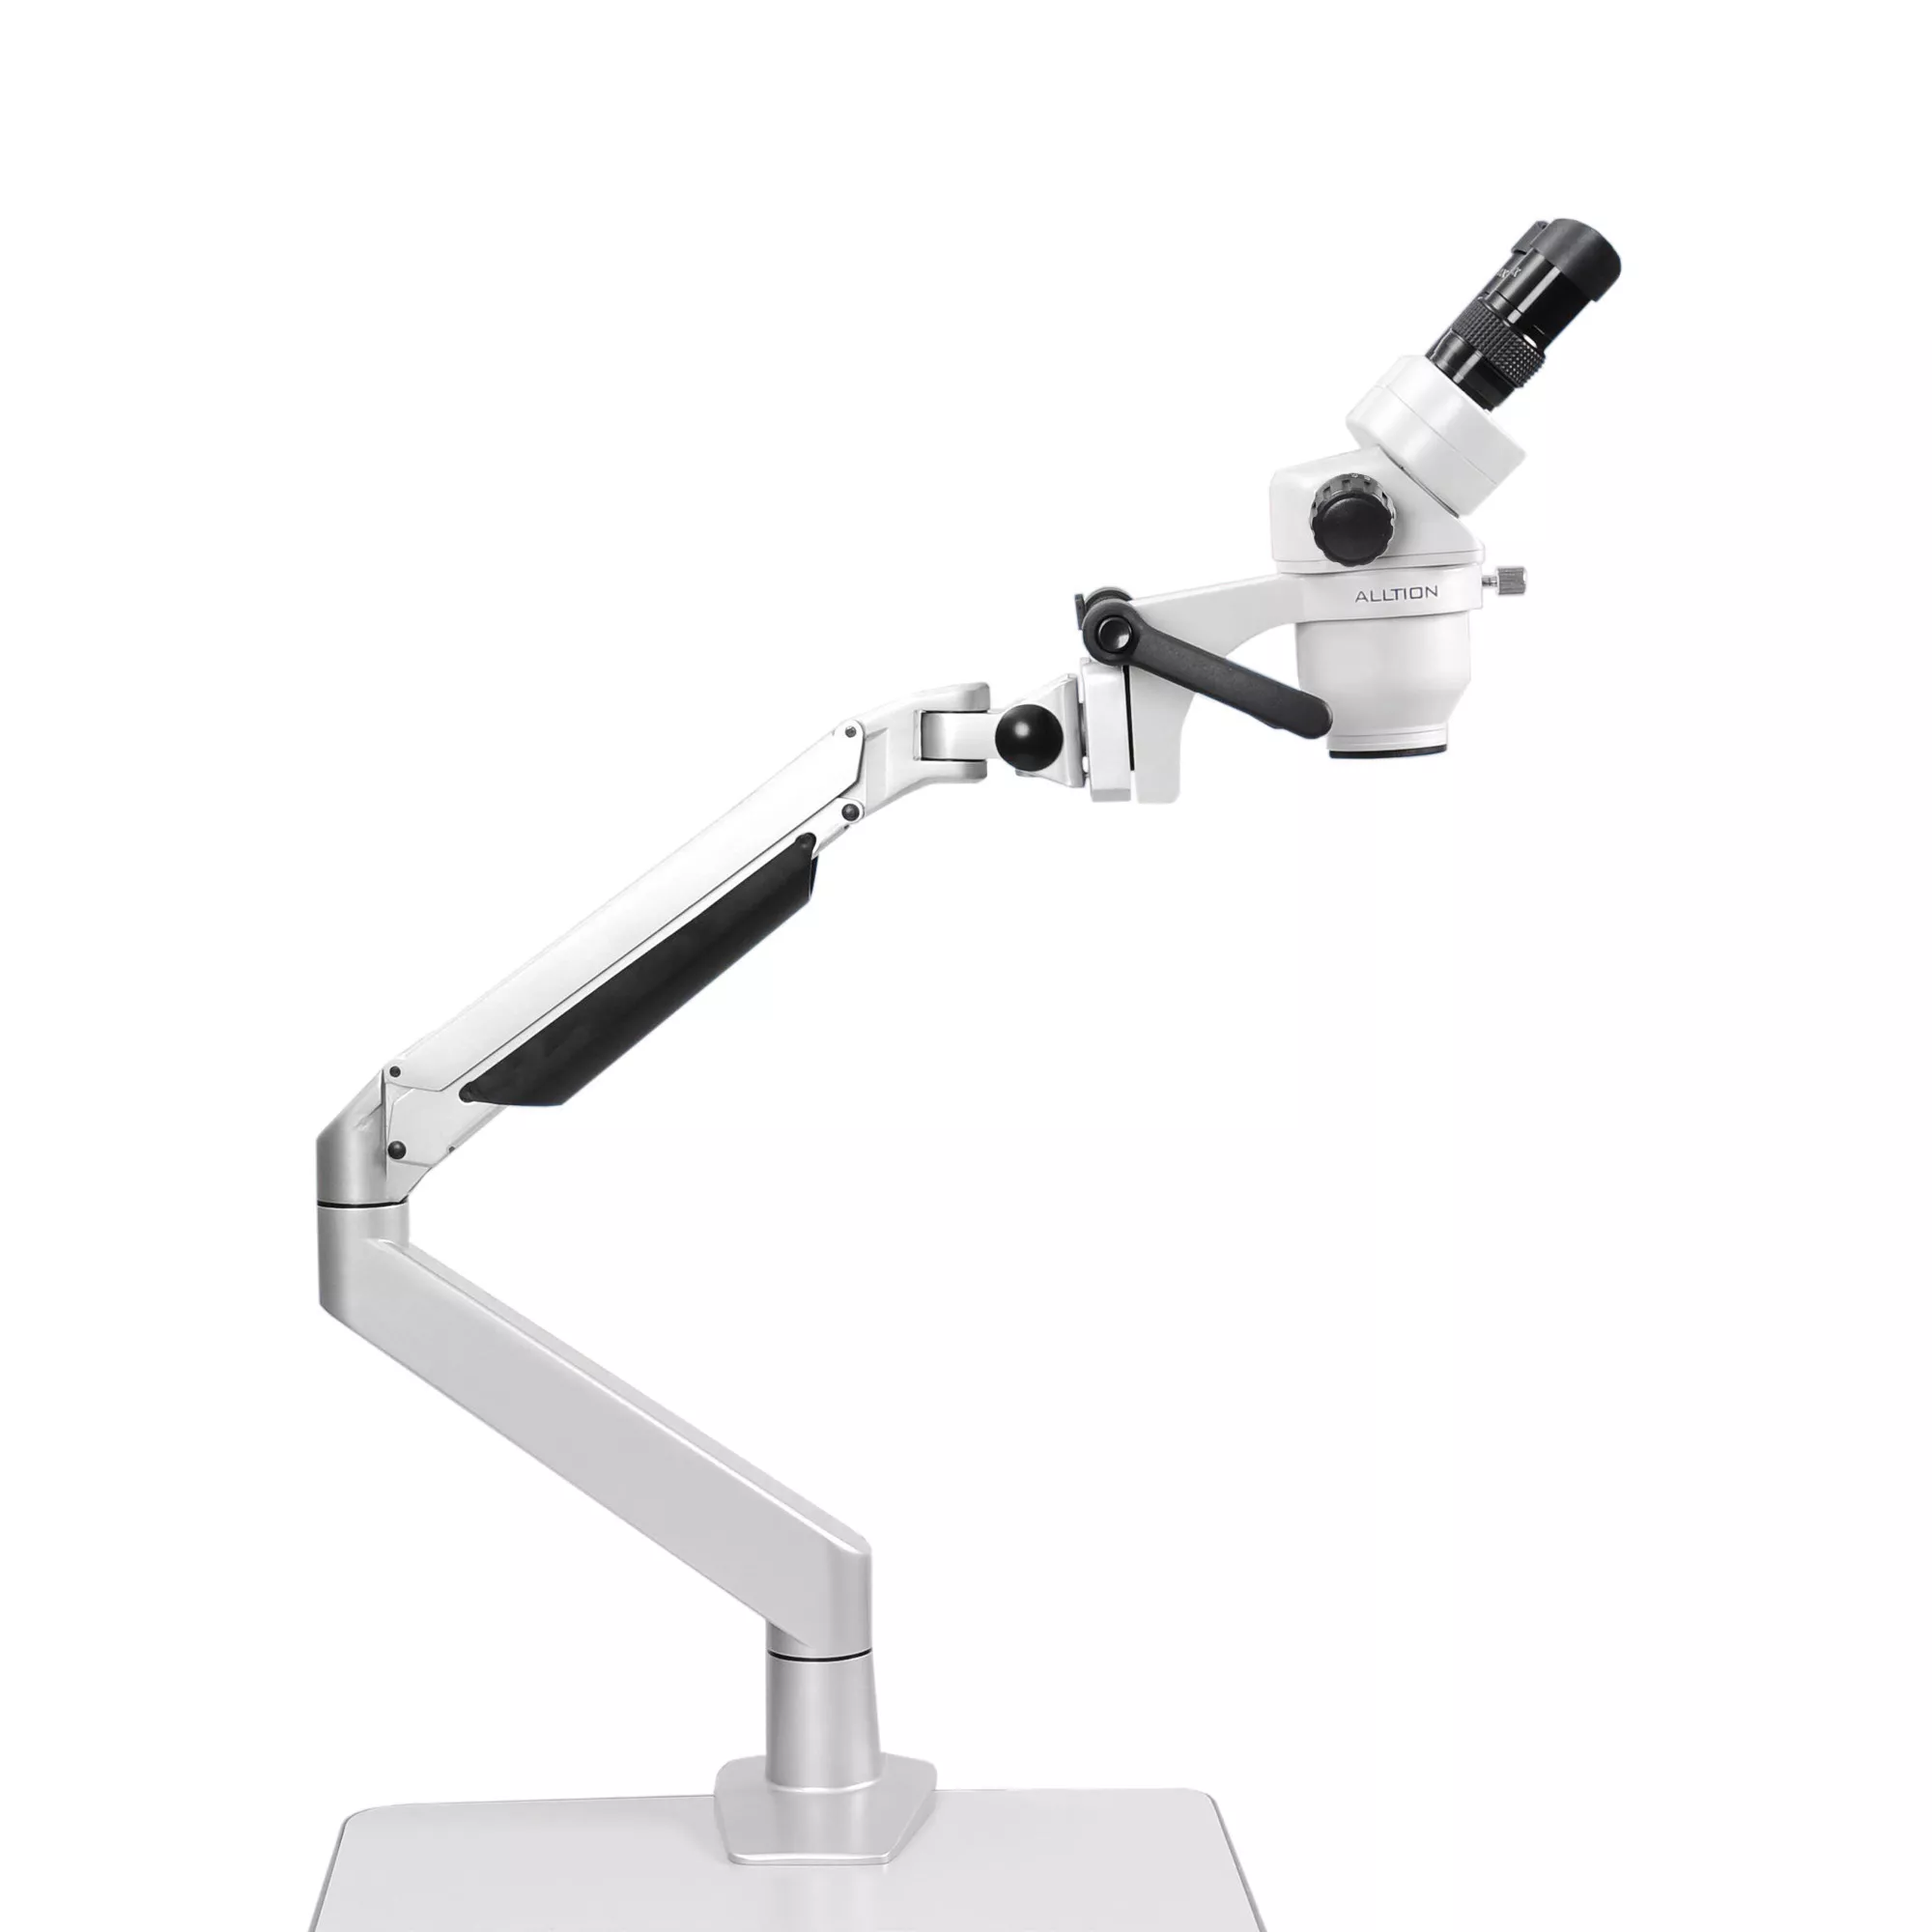 ALLTION ASM-0745BS  бинокулярный зуботехнический стереомикроскоп с плавным увеличением 7x-45x, на кронштейне с настольным креплением